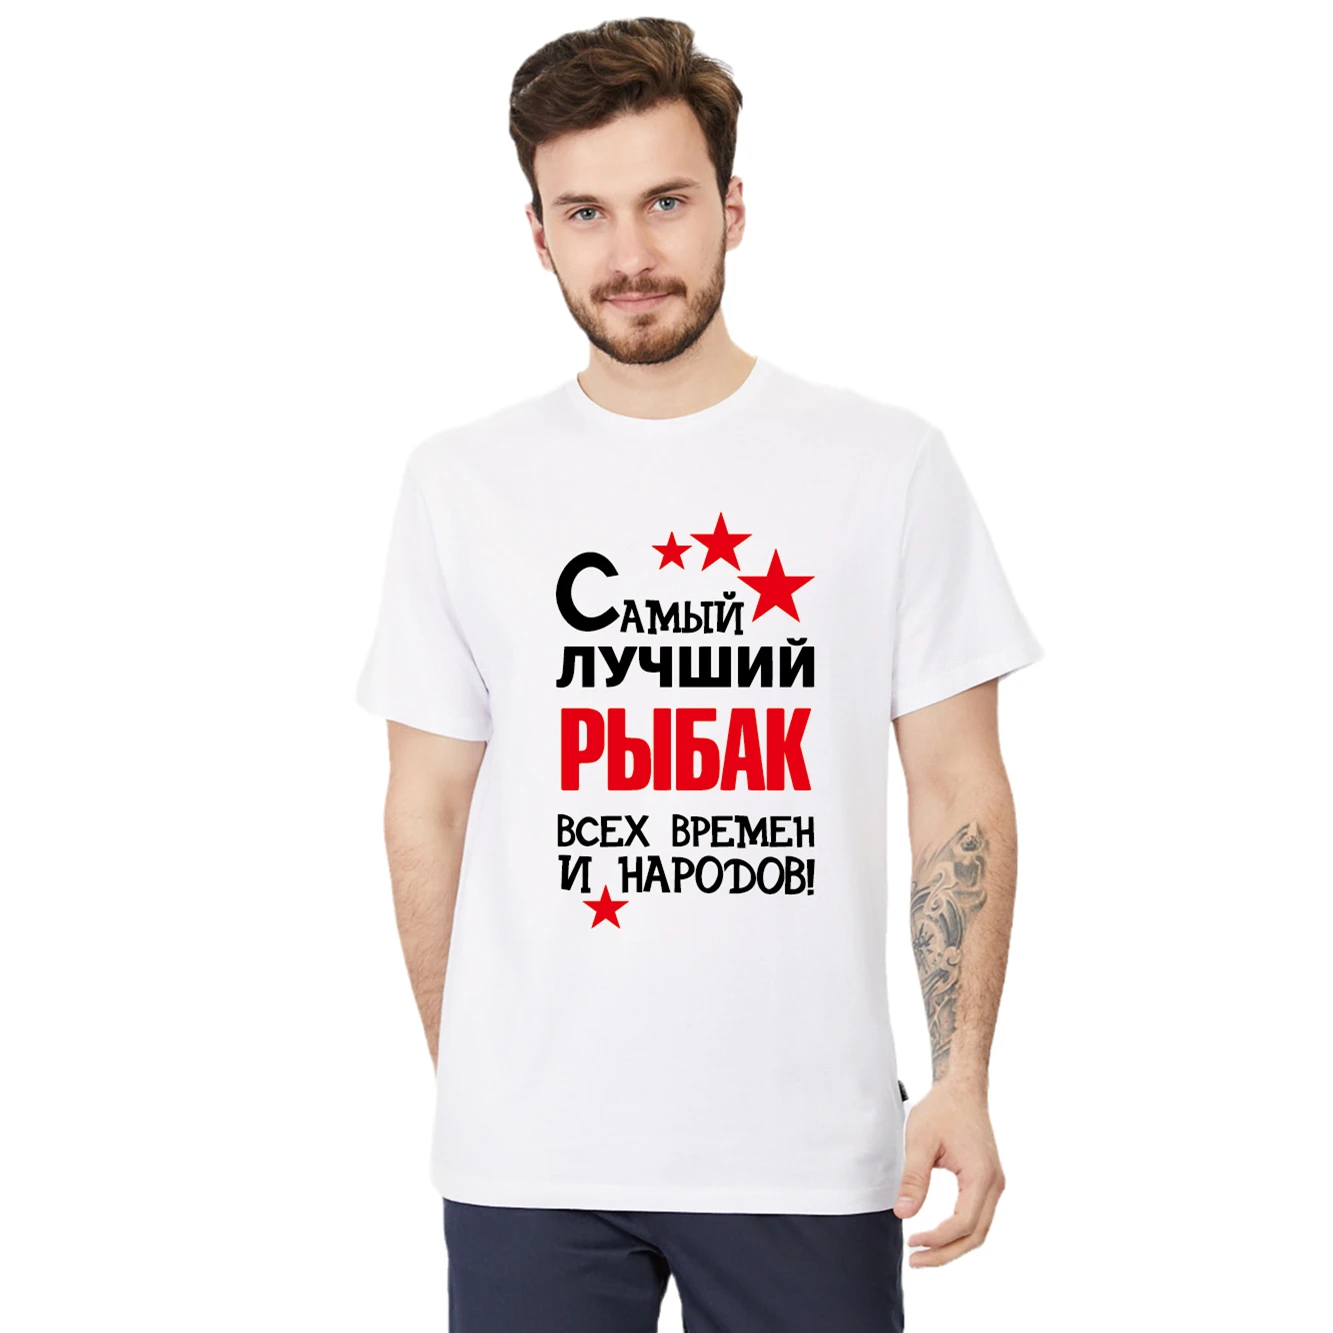 

Мужская хлопковая футболка с принтом, Лучший Рыбак, Всех И Народов! Модная рубашка в русском стиле, футболки, топы, индивидуальное имя